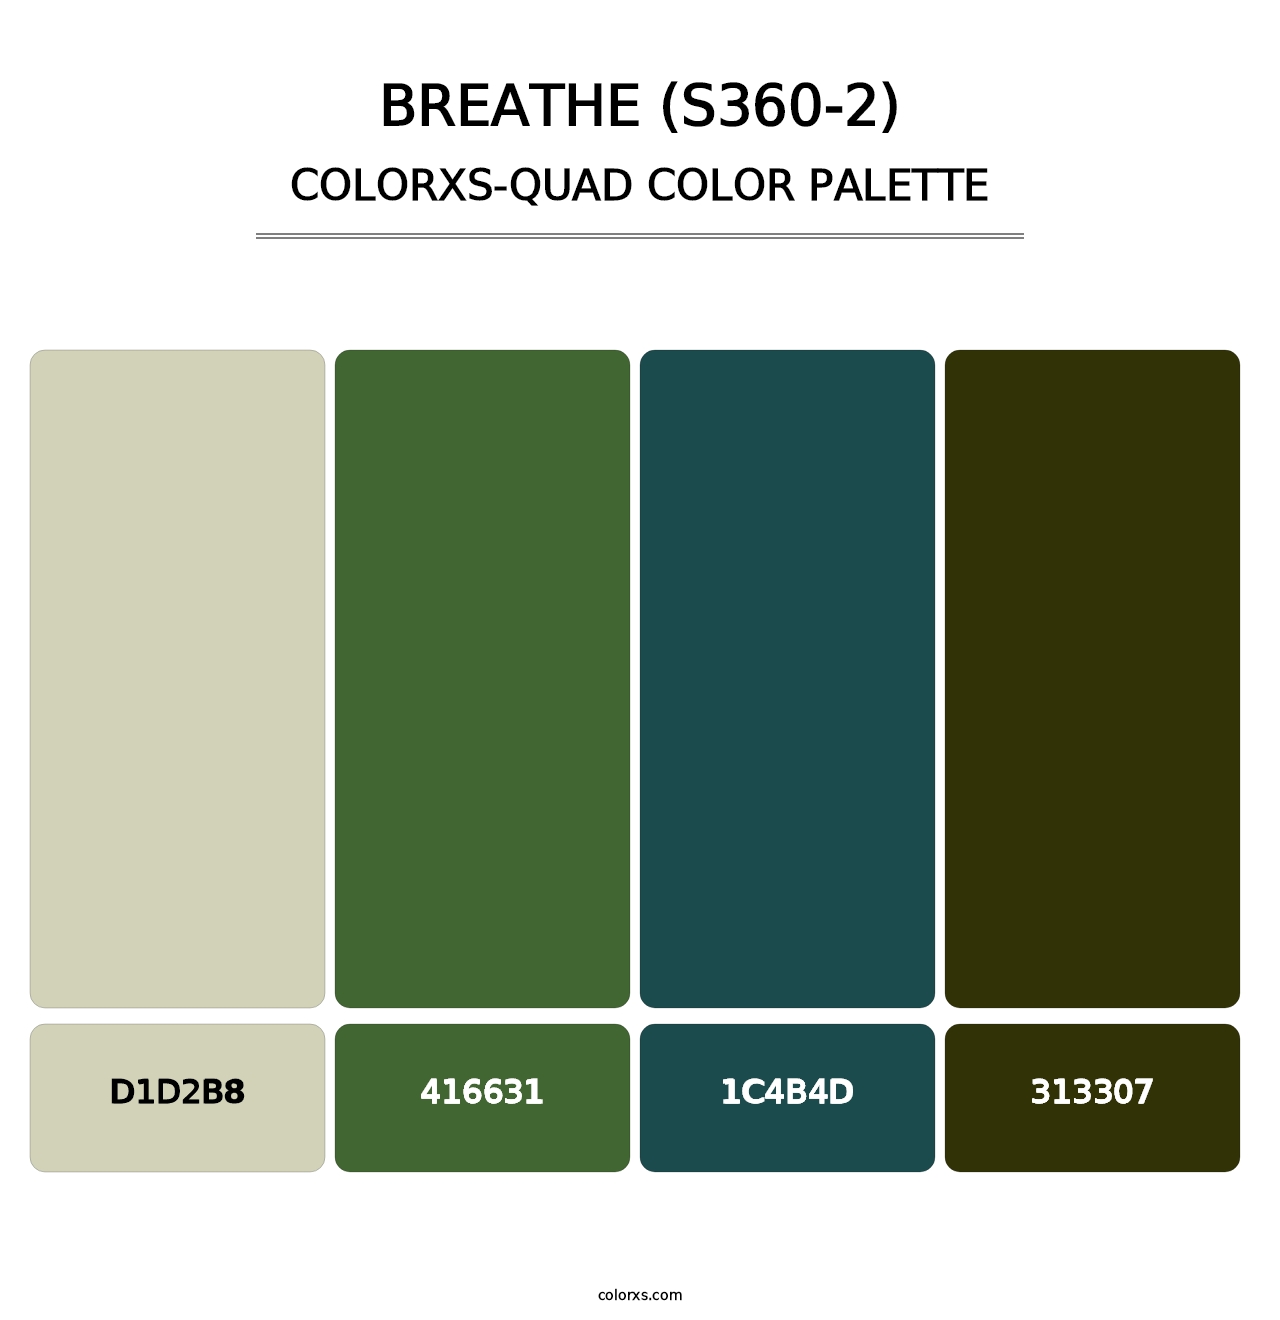 Breathe (S360-2) - Colorxs Quad Palette